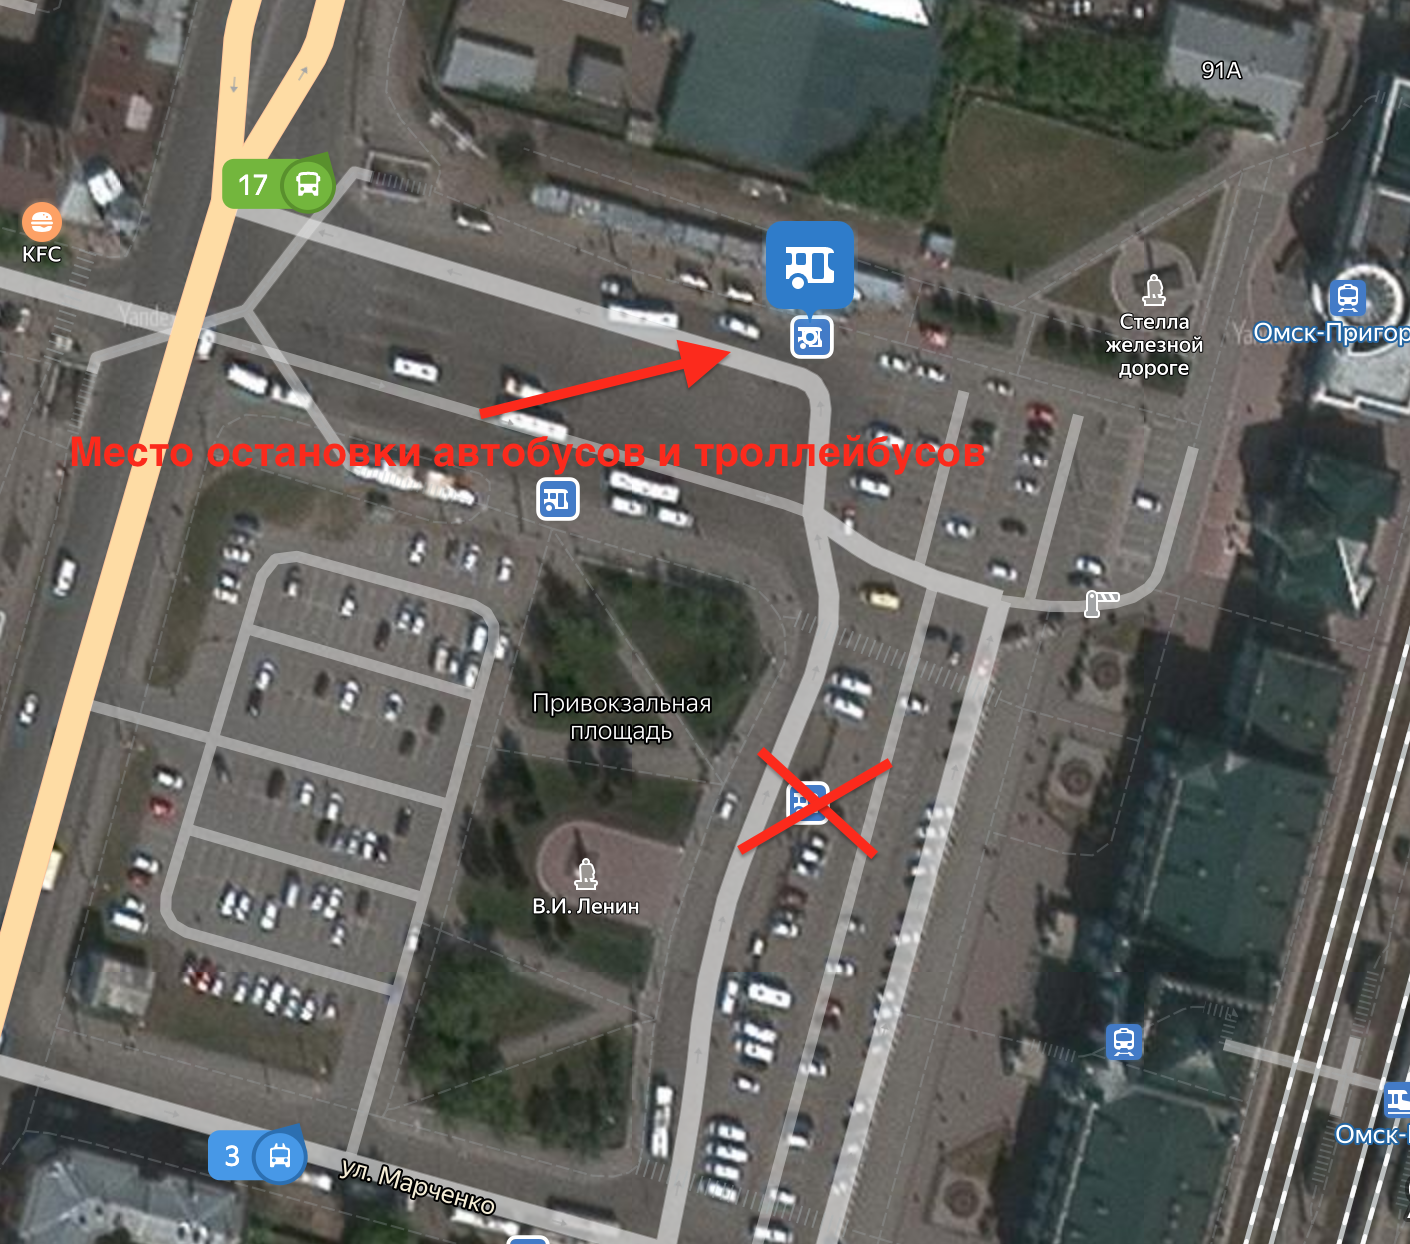 Остановки возле ЖД вокзала. Остановка ЖД вокзал маршрутки. Автобусная остановка Омск. Автобусная остановка на ЖД вокзале в Новосибирске.